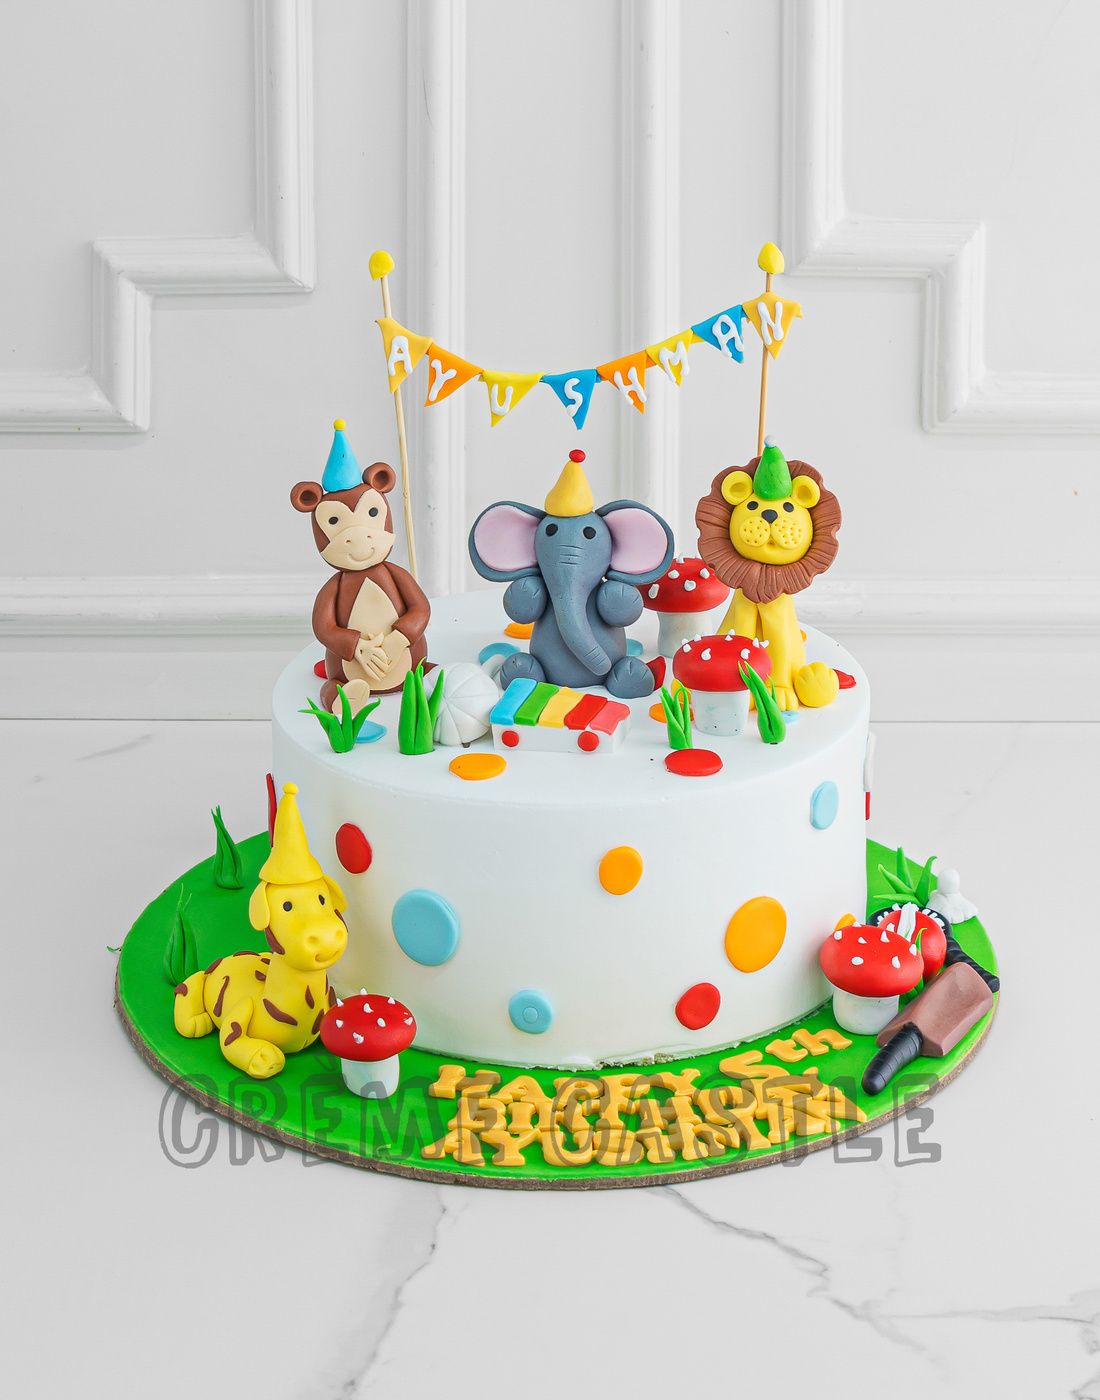 Party Animal Birthday Cake - Wilton